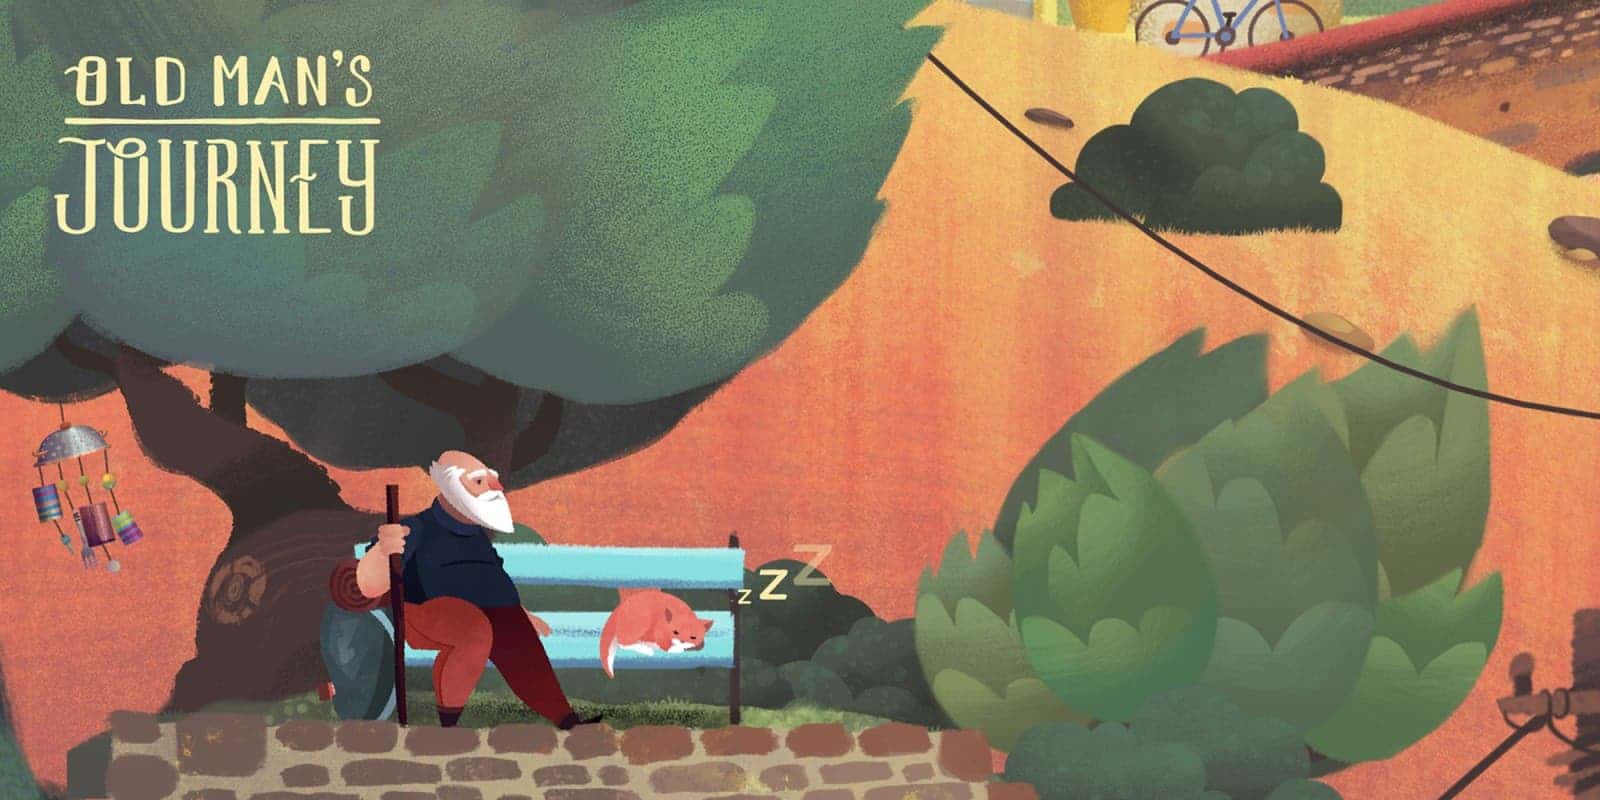 Old Man's Journey offline spel voor iOS